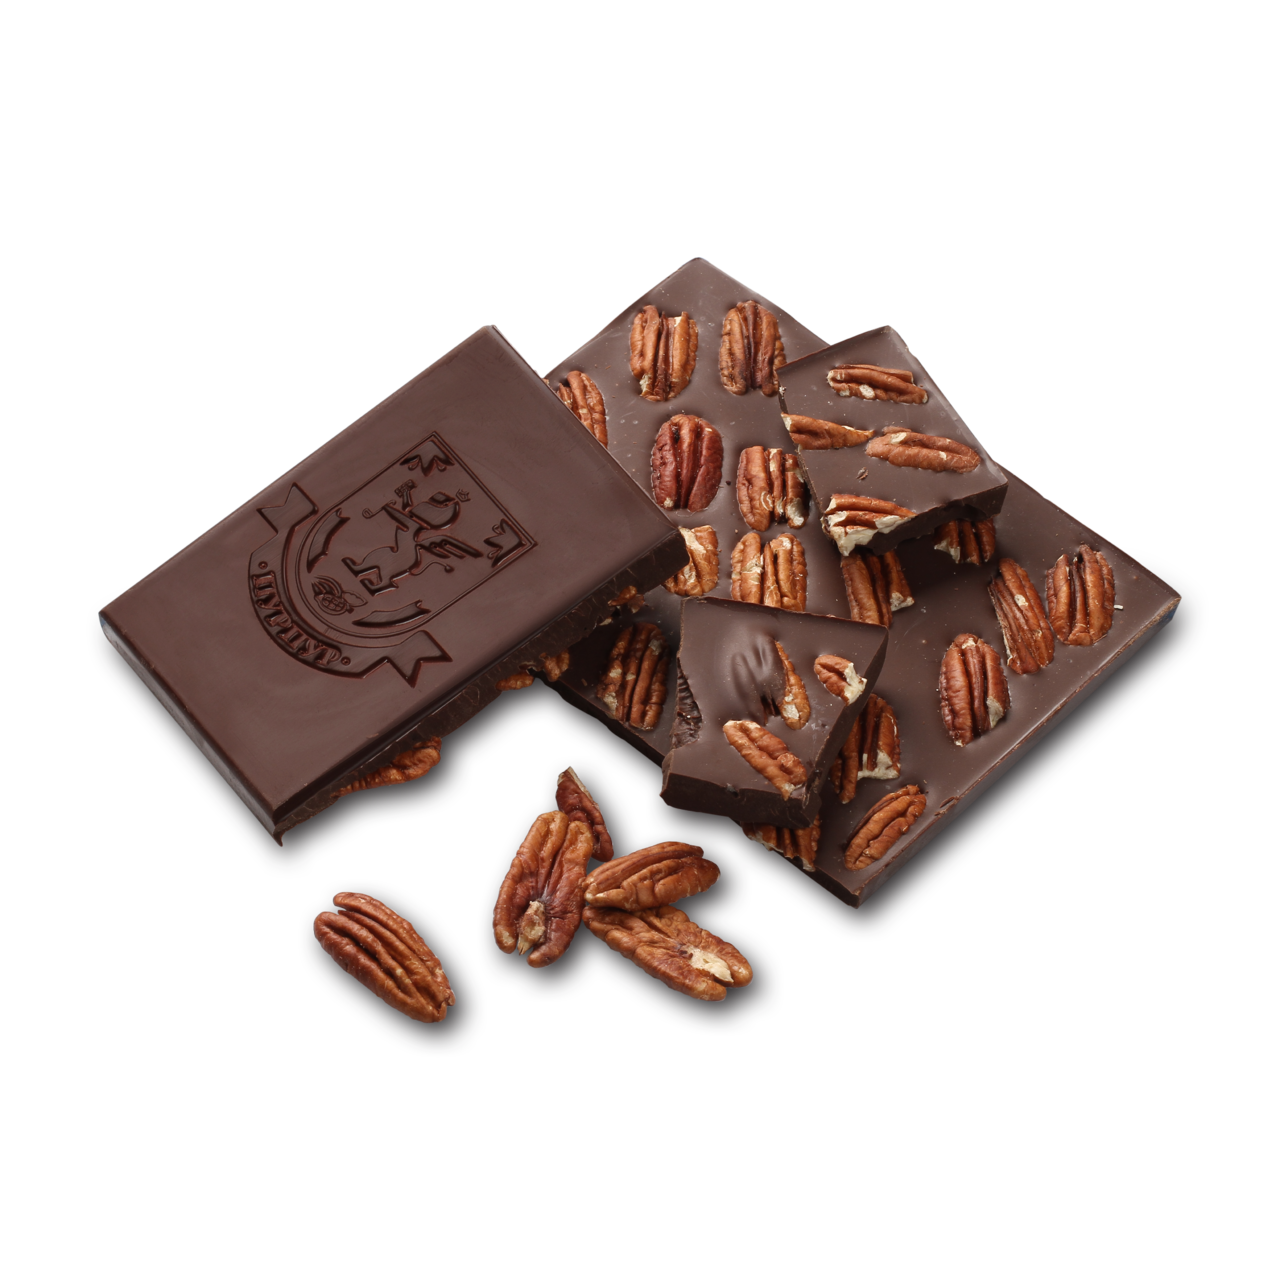 Плитка шоколада. Плиточный шоколад. Шоколадная плитка. Фантазийные шоколадные плитки.